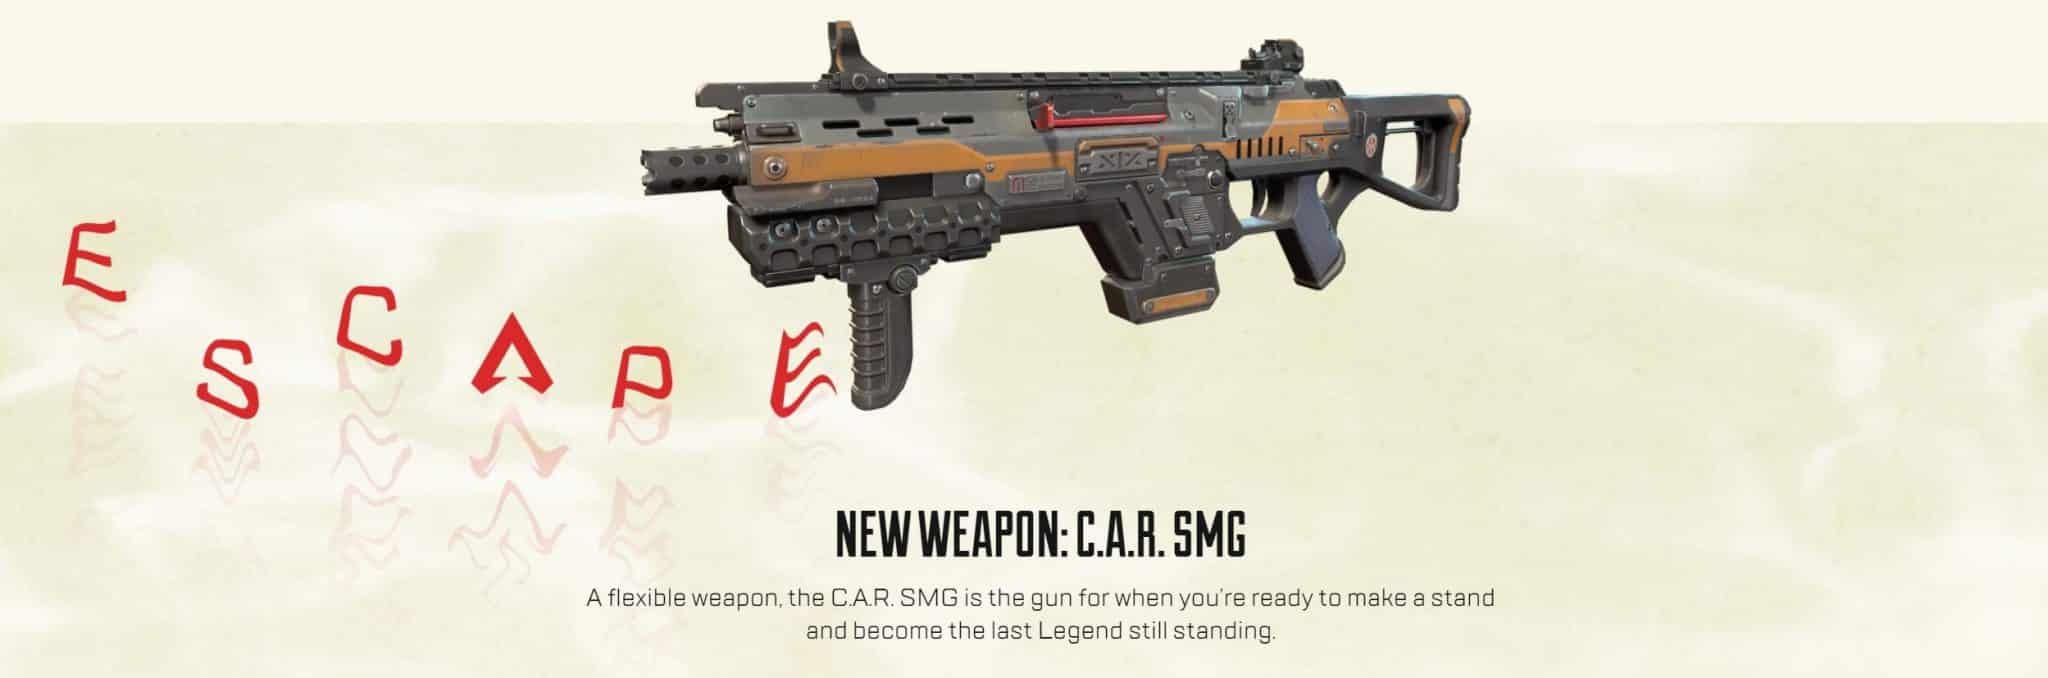 Car smg: nuova arma di apex legends